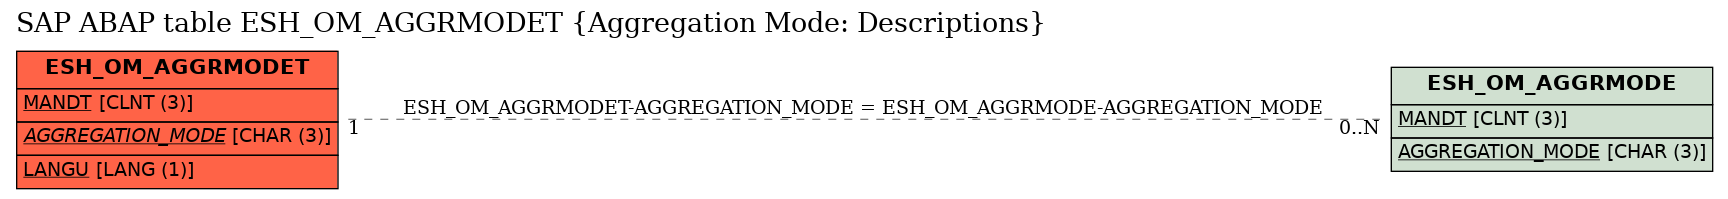 E-R Diagram for table ESH_OM_AGGRMODET (Aggregation Mode: Descriptions)